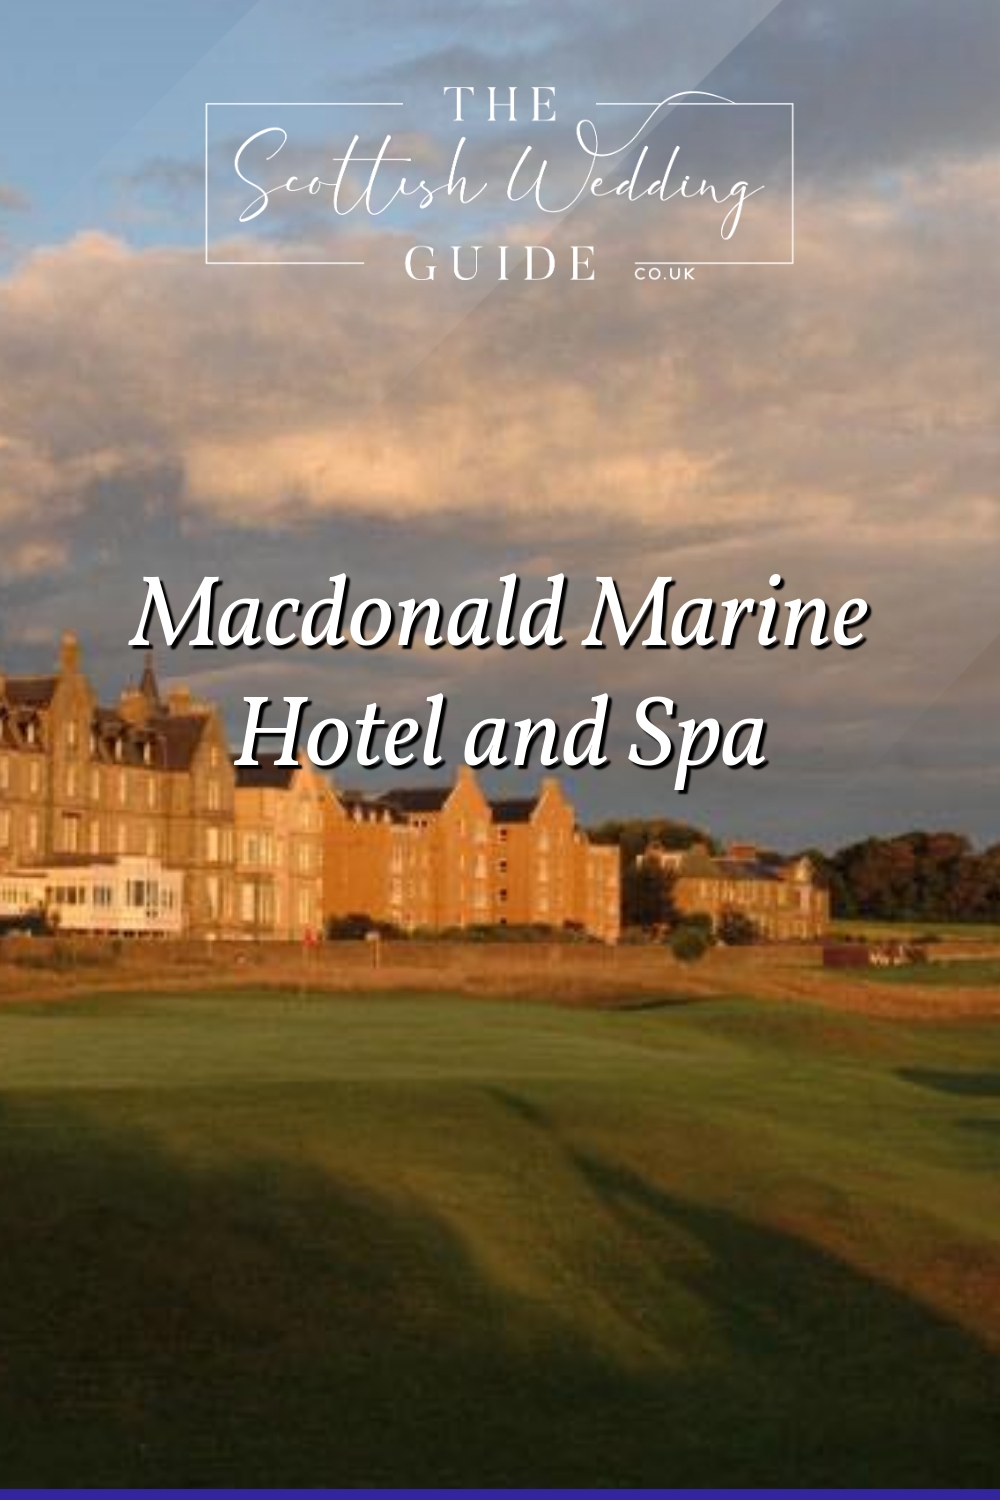 Macdonald Marine Hotel and Spa